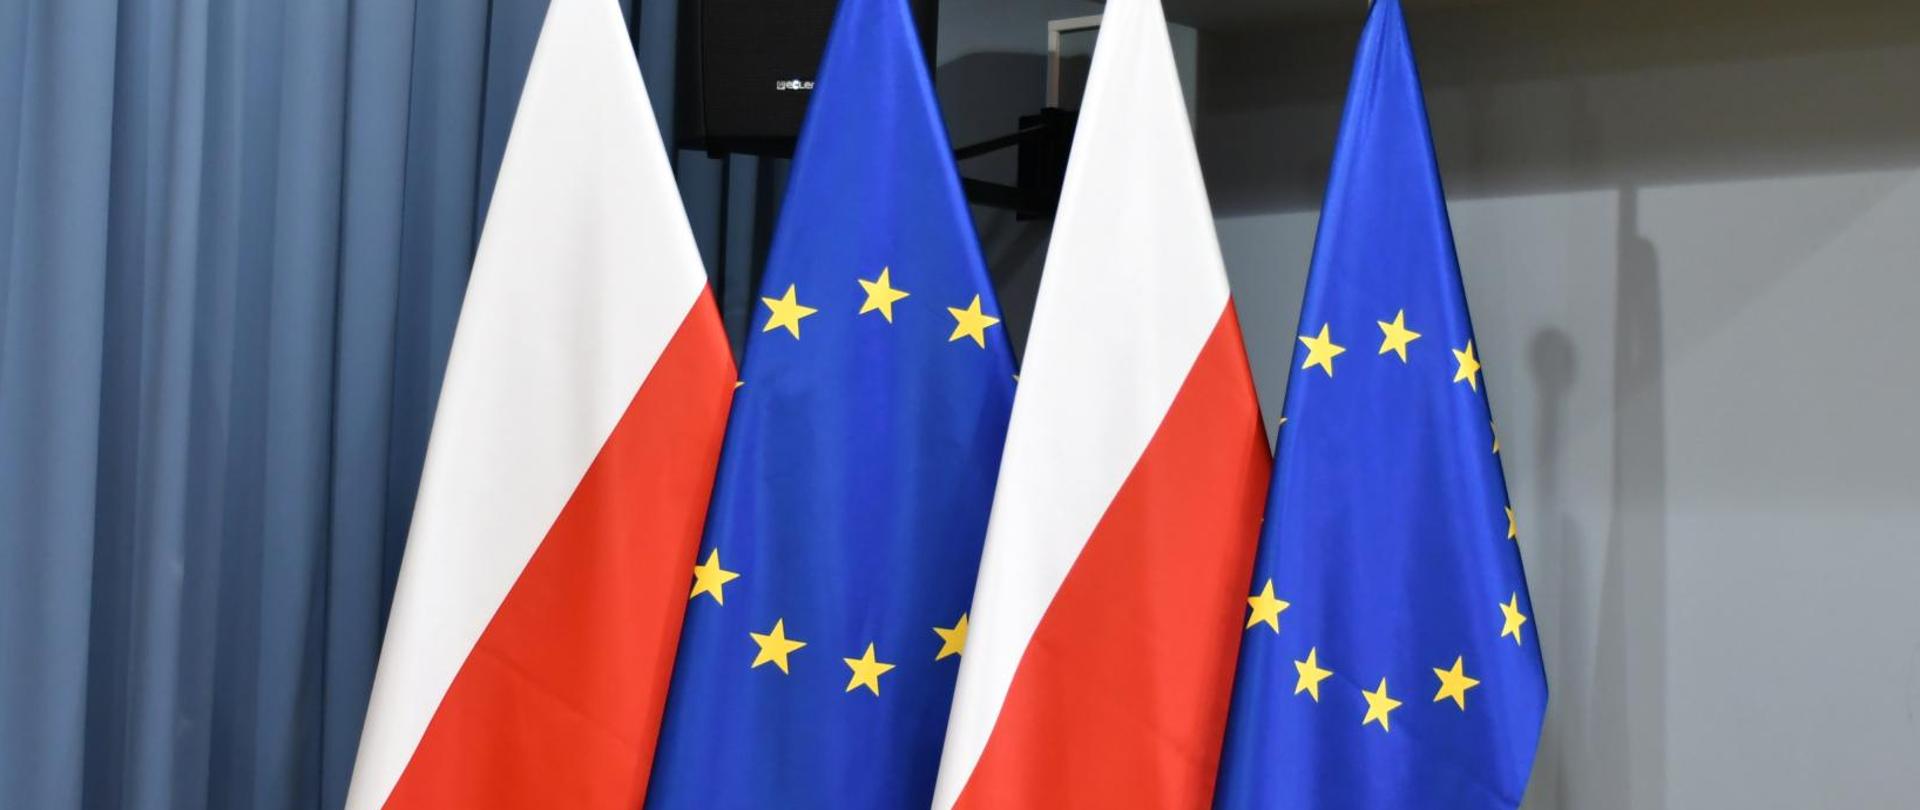 Flagi Unii Europejskiej i Polski